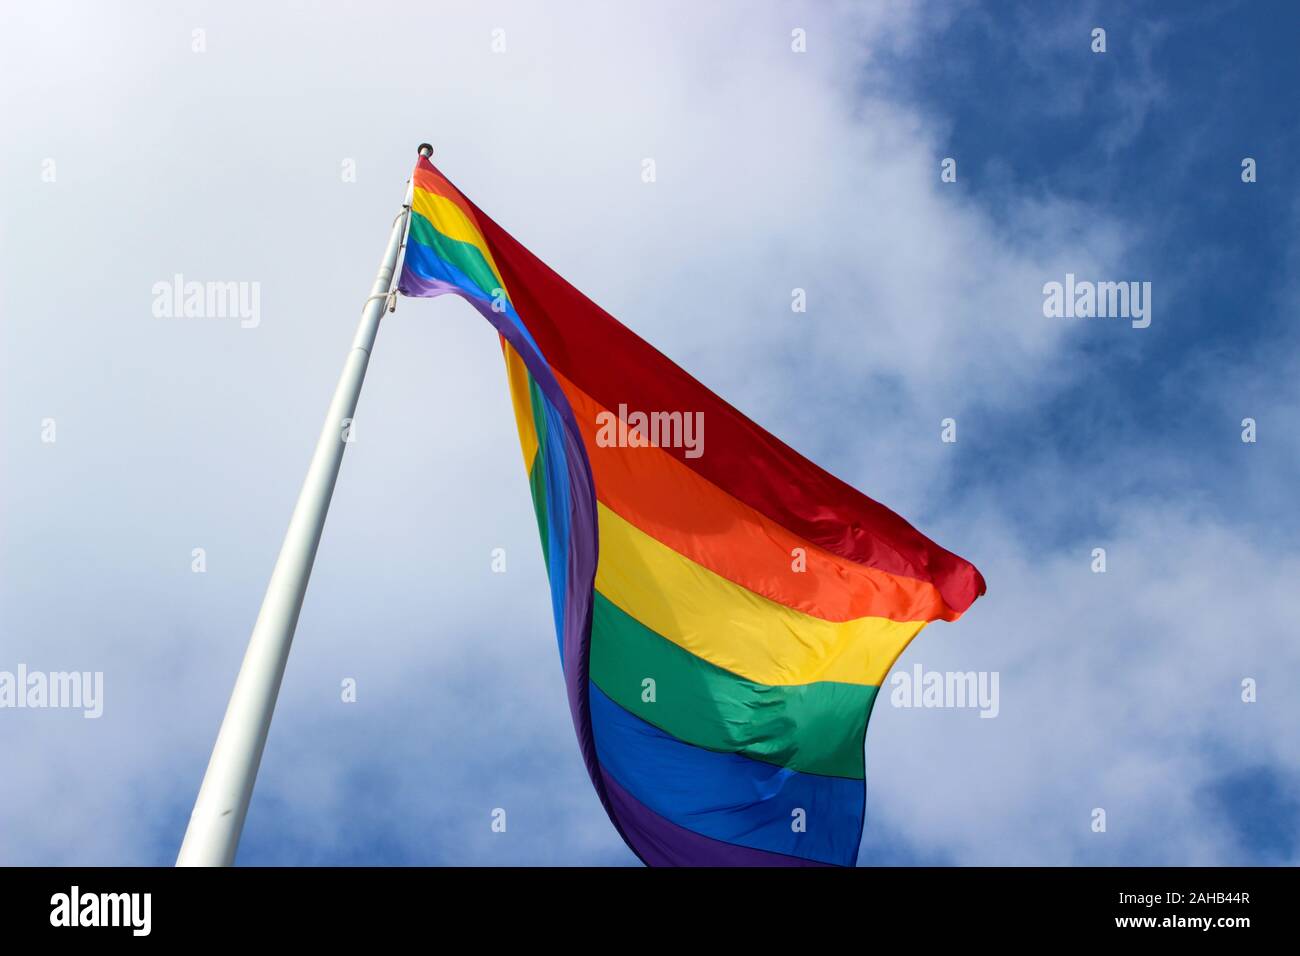 Bandiera arcobaleno sul pennone. Basso angolo di visione. Quartiere Castro di San Francisco, Stati Uniti d'America. Foto Stock